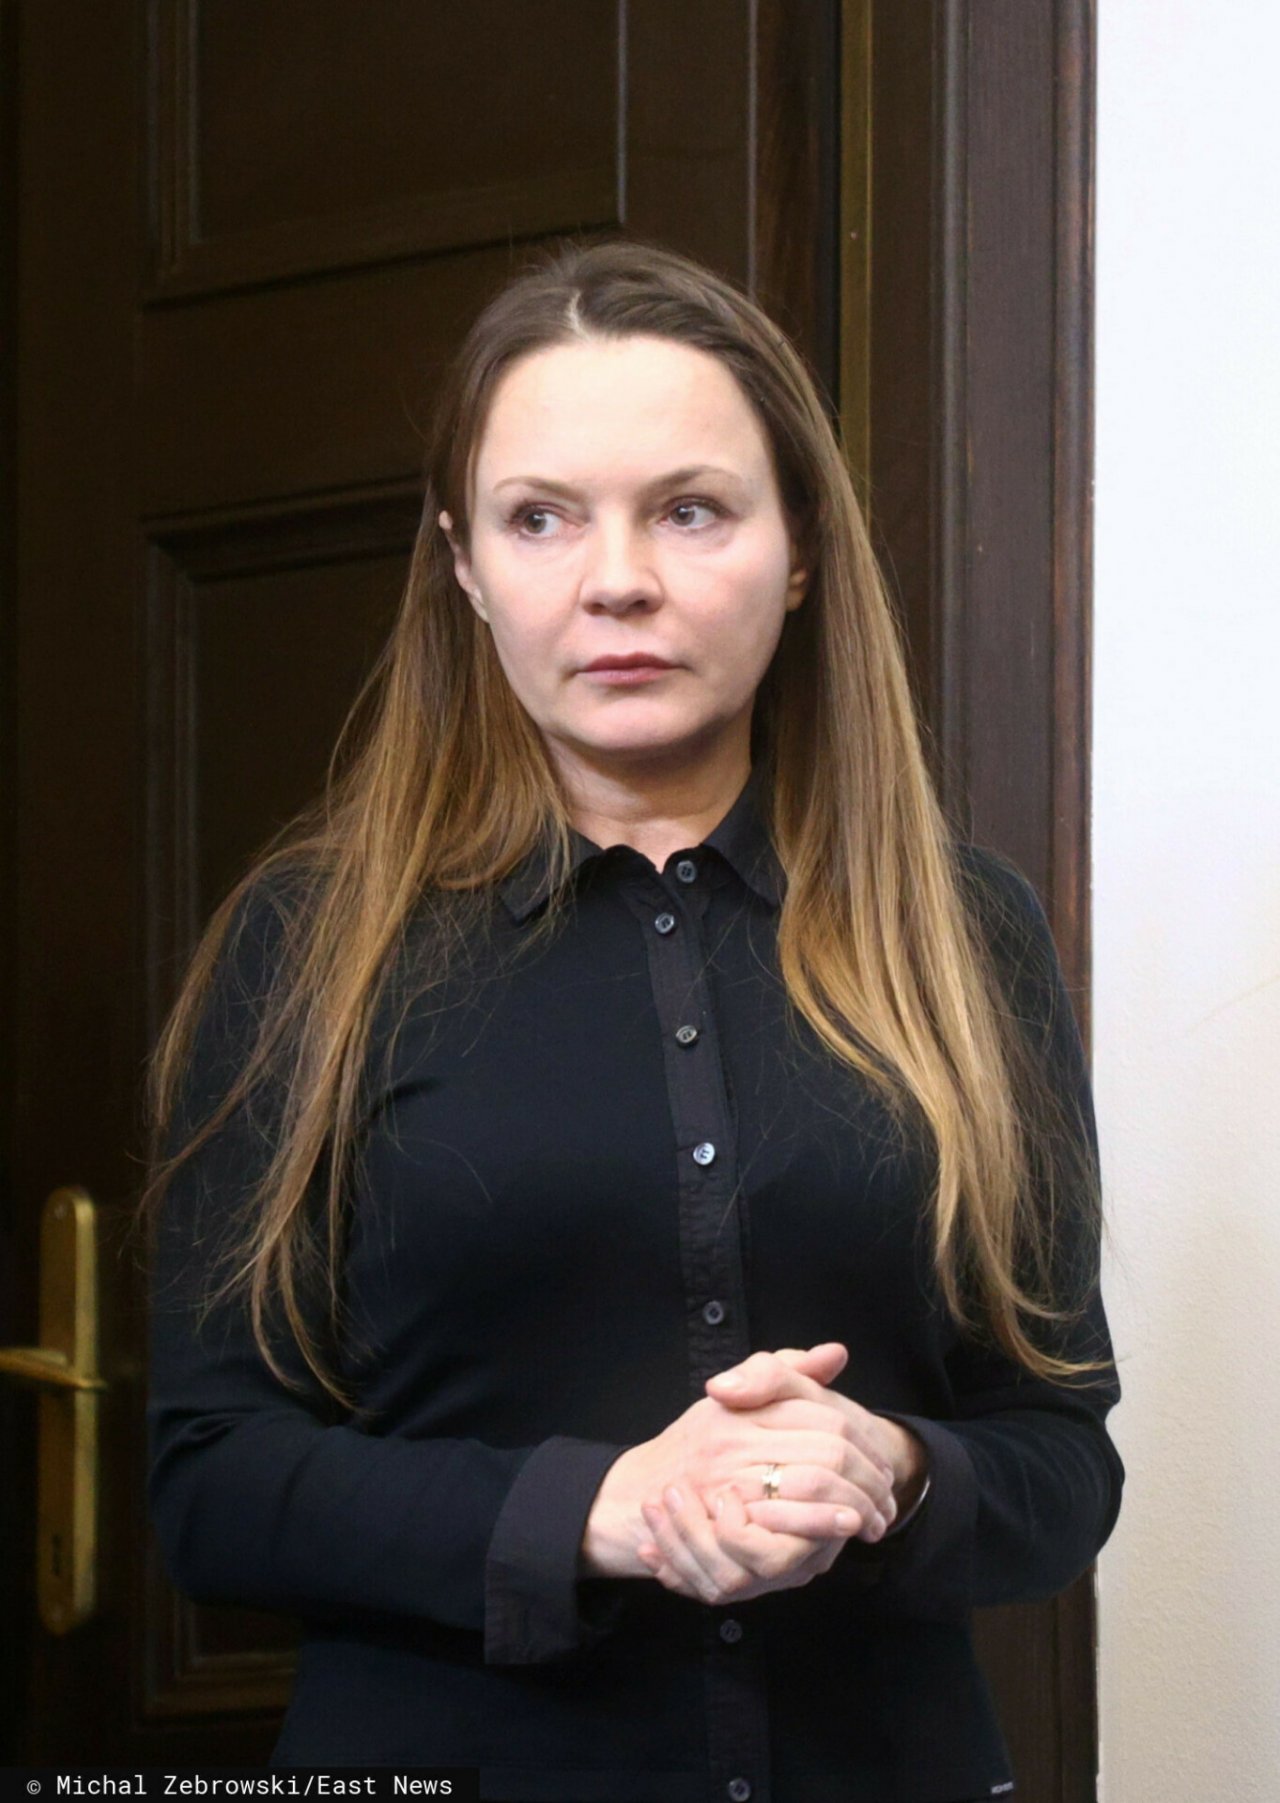 Barbara Kamińska w rozpuszczonych włosach i czarnej koszuli bez makijażu